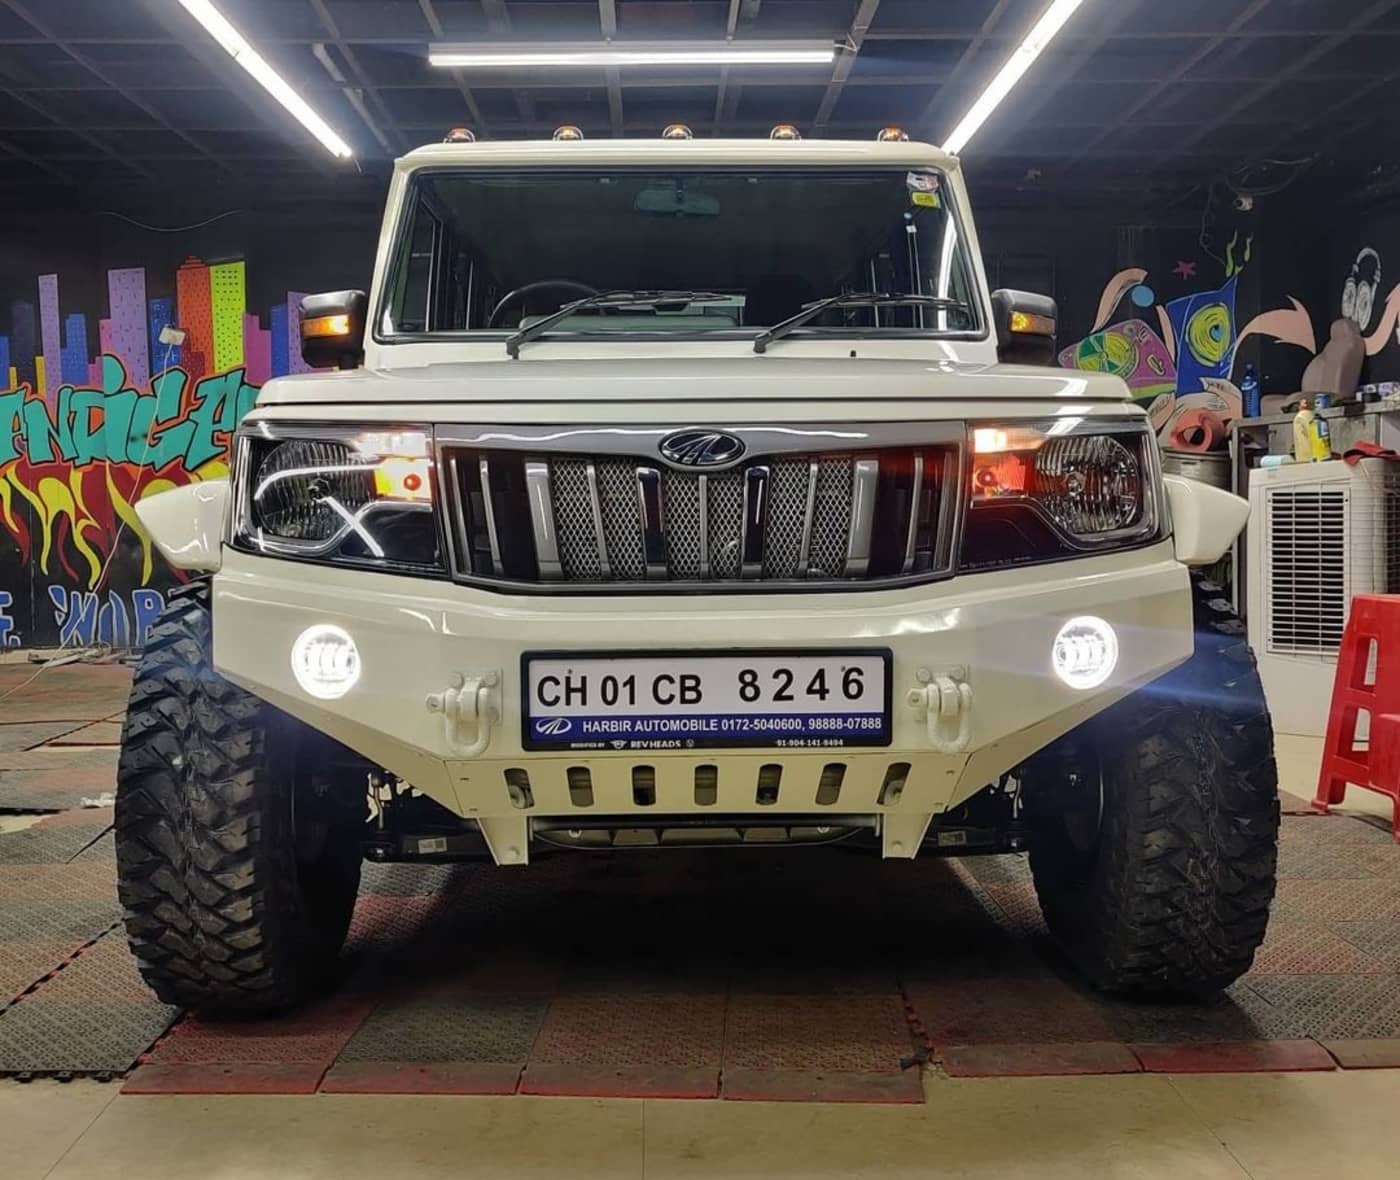 Mumbai Modifier Turns Mahindra Thar Into Luxury SUV | CarDekho.com